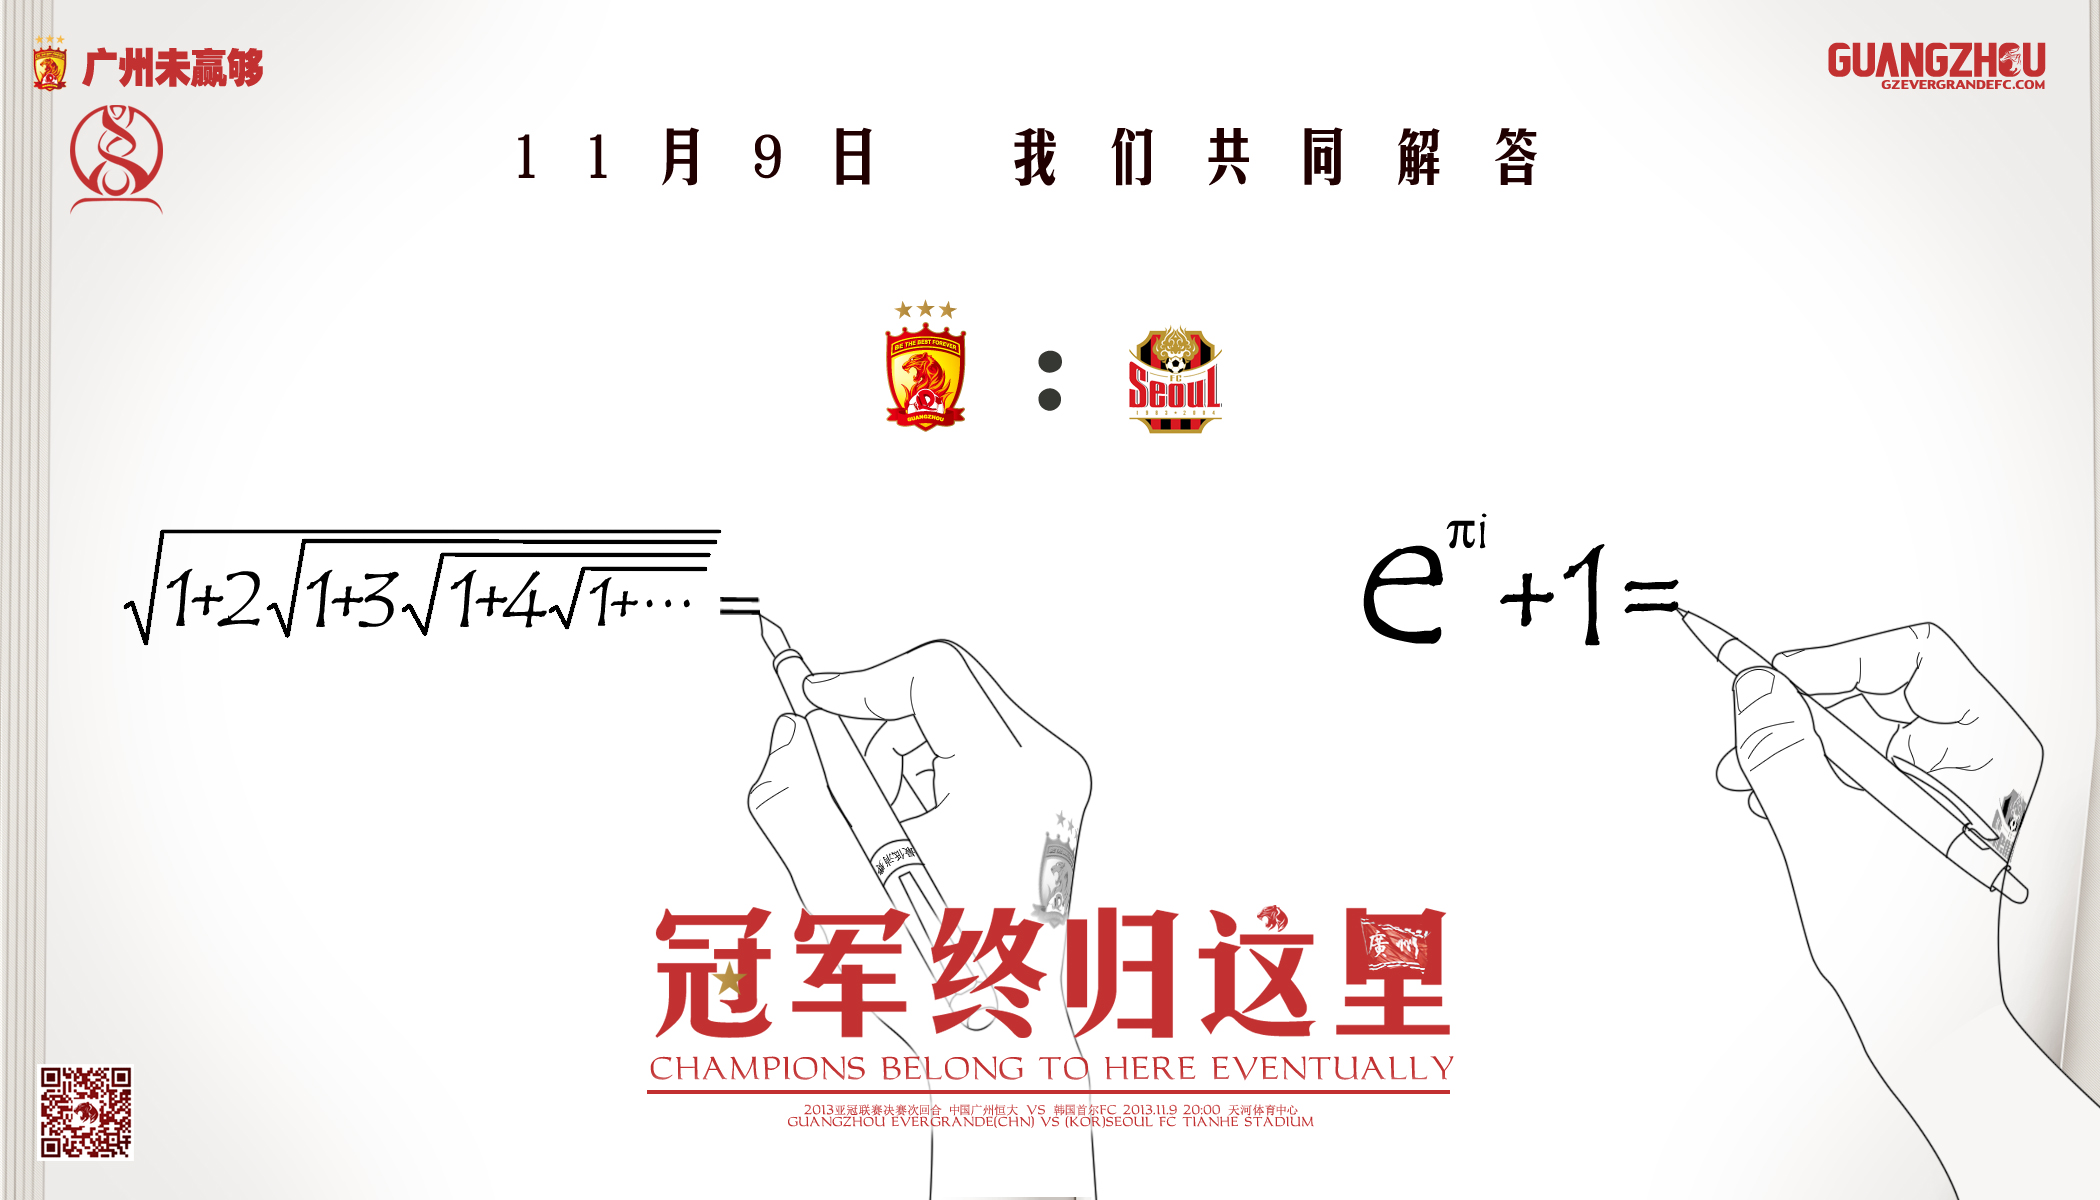 恒大决赛数学海报曝光 难懂公式背后藏雄心_ 视频中国